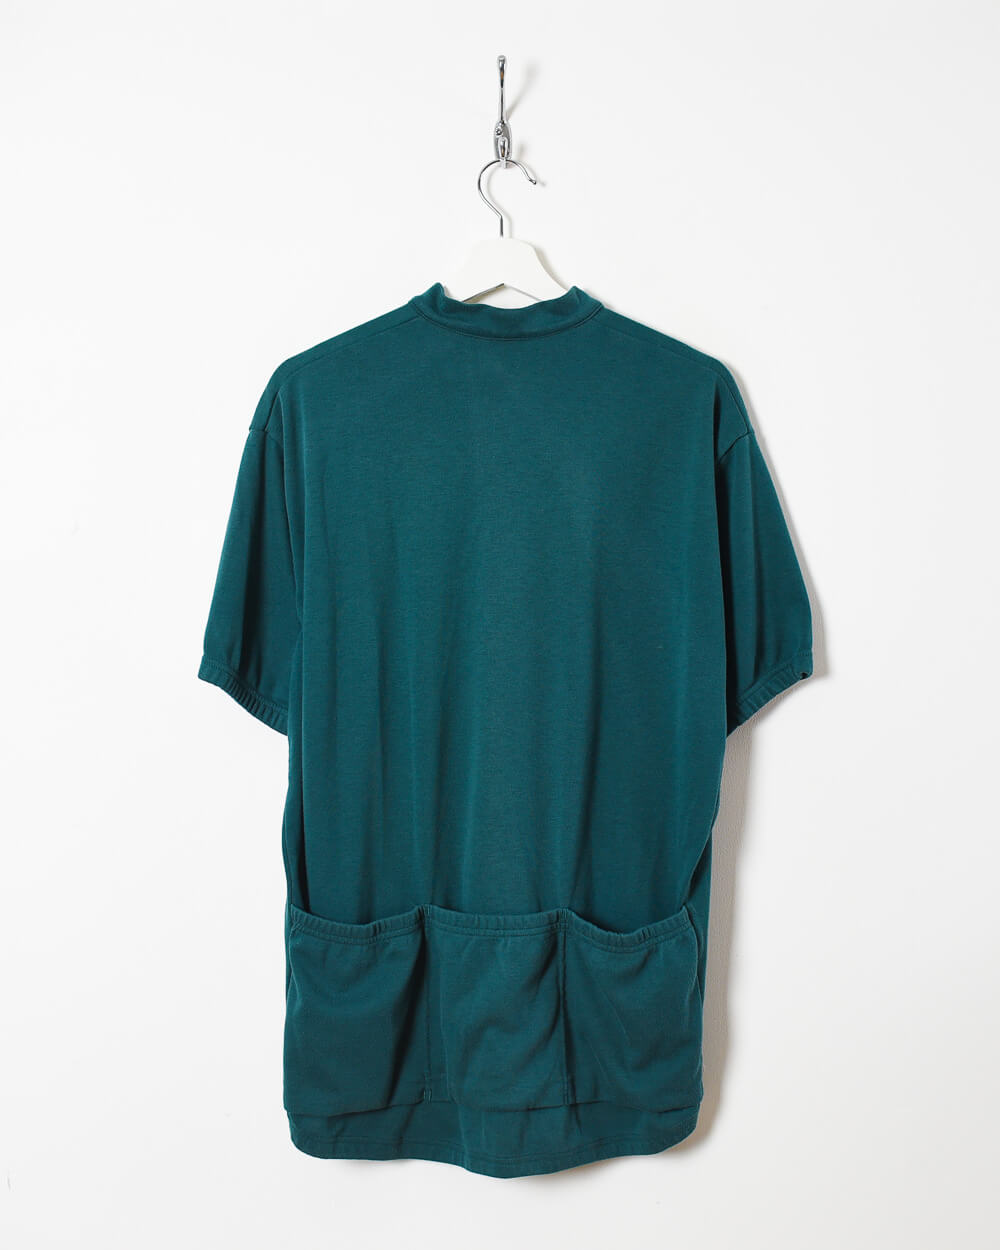 Green Nike ACG 1/2 Zip T-Shirt - X-Large